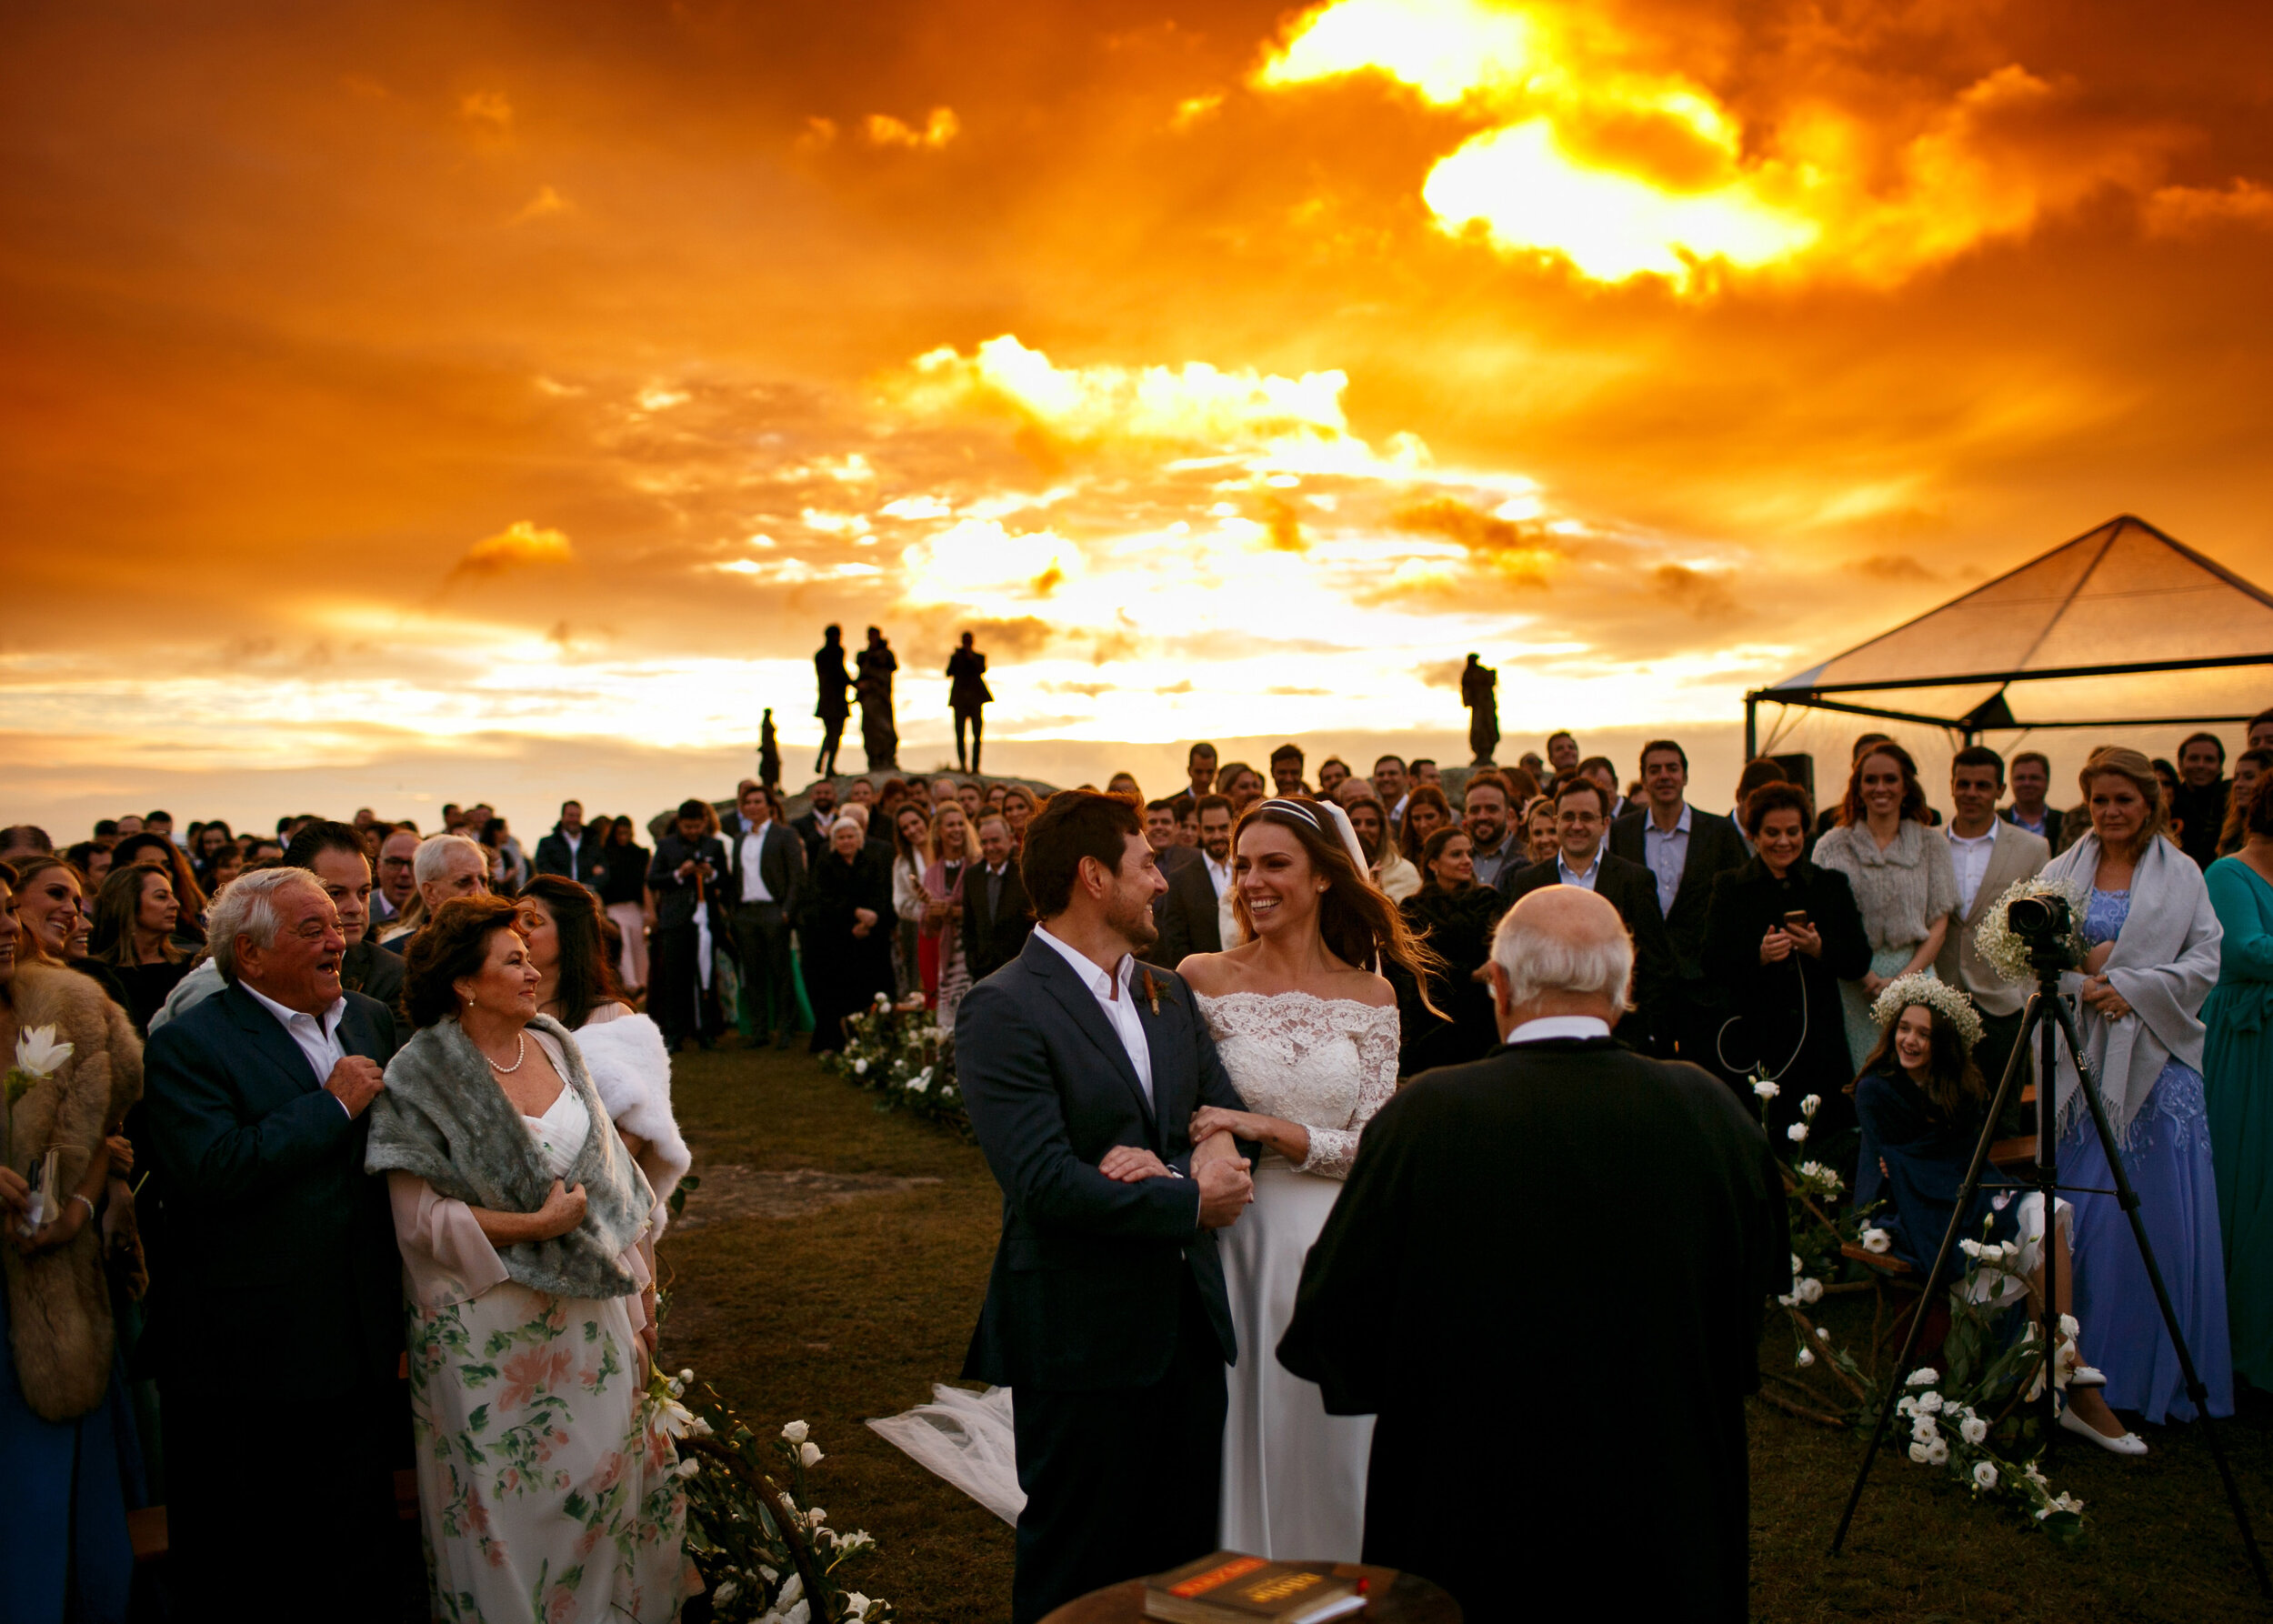 Cheng NV fotografo de casamento em Curitiba- Melhor fotografia do brasil - MIni casamento - Inspiração de decoração - 2020 - noiva - inesquecivel casamento_.43.jpg